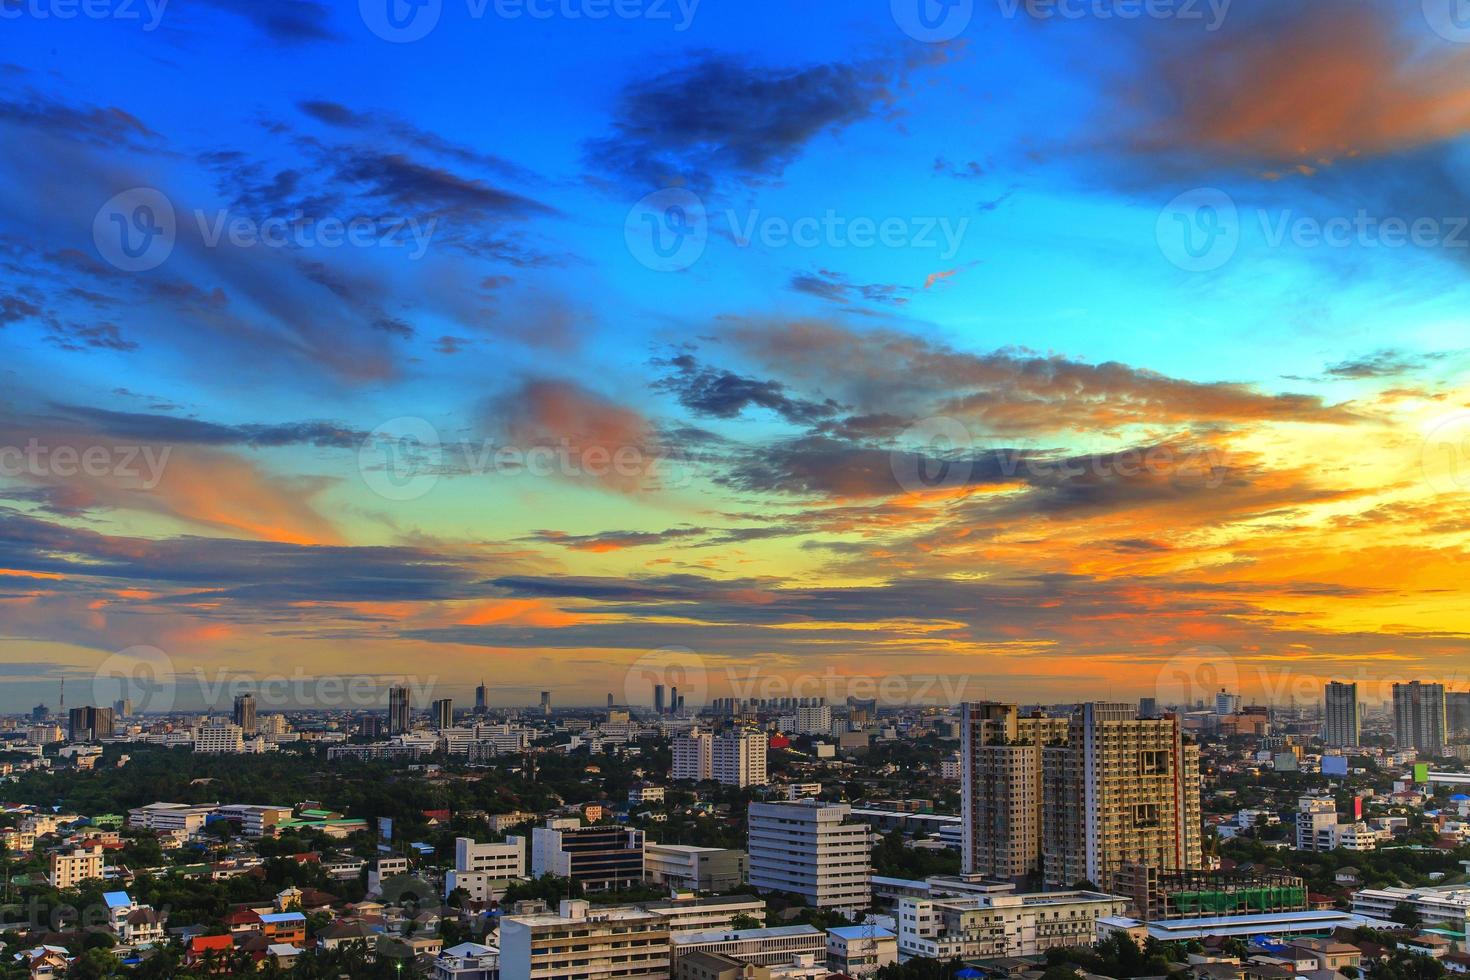 bangkok, thailandia veduta aerea con skyline foto